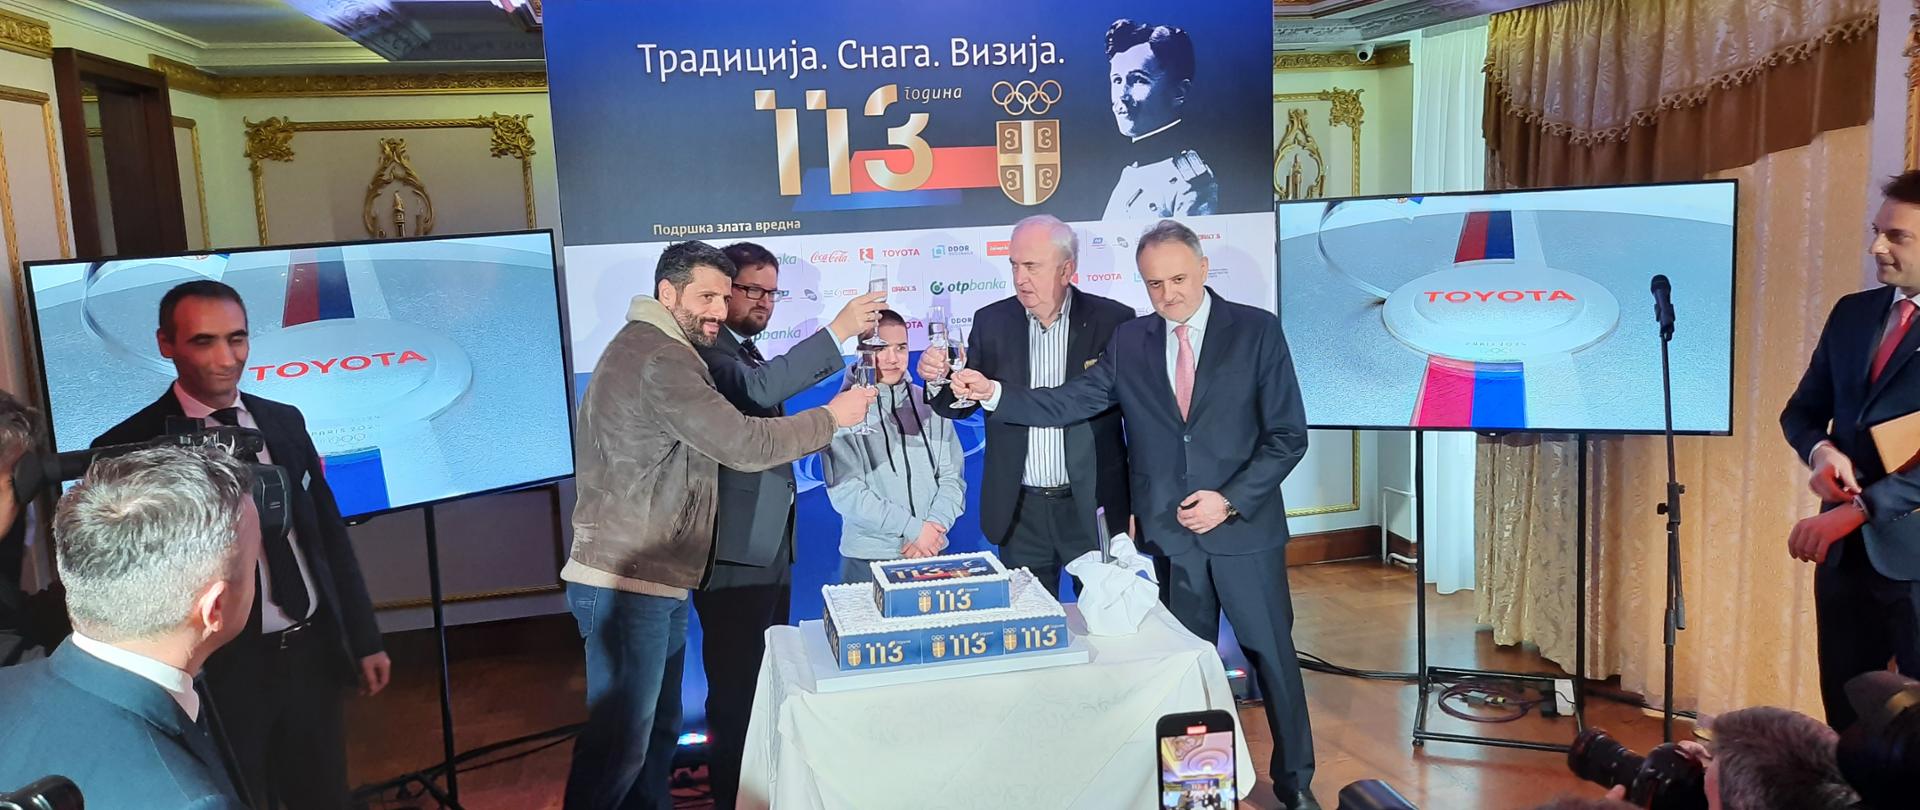 Na zaproszenie Serbskiego Komitetu Olimpijskiego (SKO) Ambasador RP w Belgradzie, jako reprezentant państwa-gospodarza III Igrzysk Europejskich, uczestniczył w uroczystych obchodach 113. rocznicy utworzenia związku olimpijskiego w Serbii.